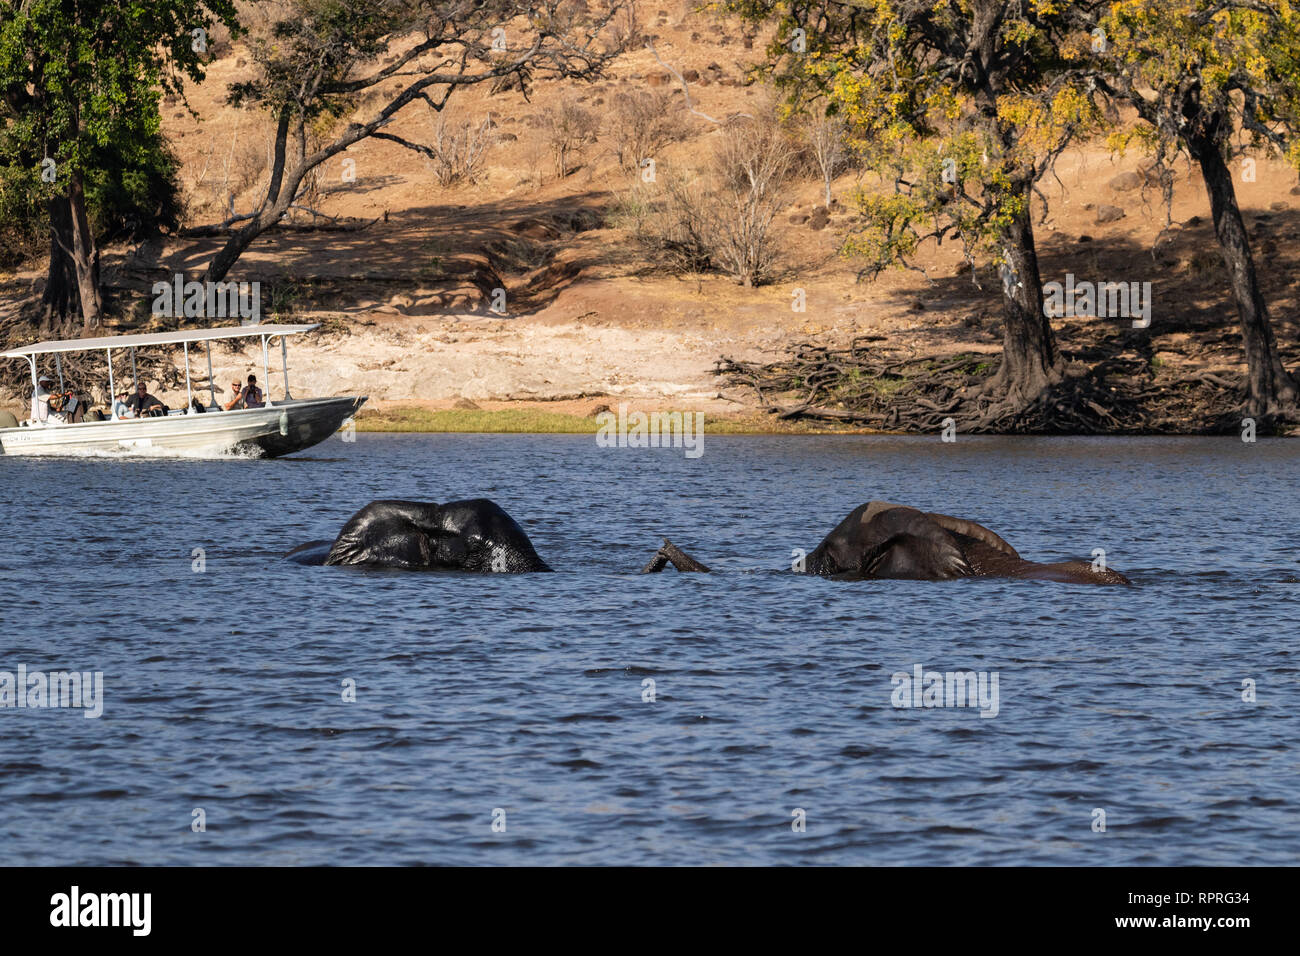 Deux éléphants mâles jouent à la lutte et à la natation dans la rivière, tandis qu'un bateau touristique passe en arrière-plan dans le parc national Chobe, Kasane, Botswana Banque D'Images